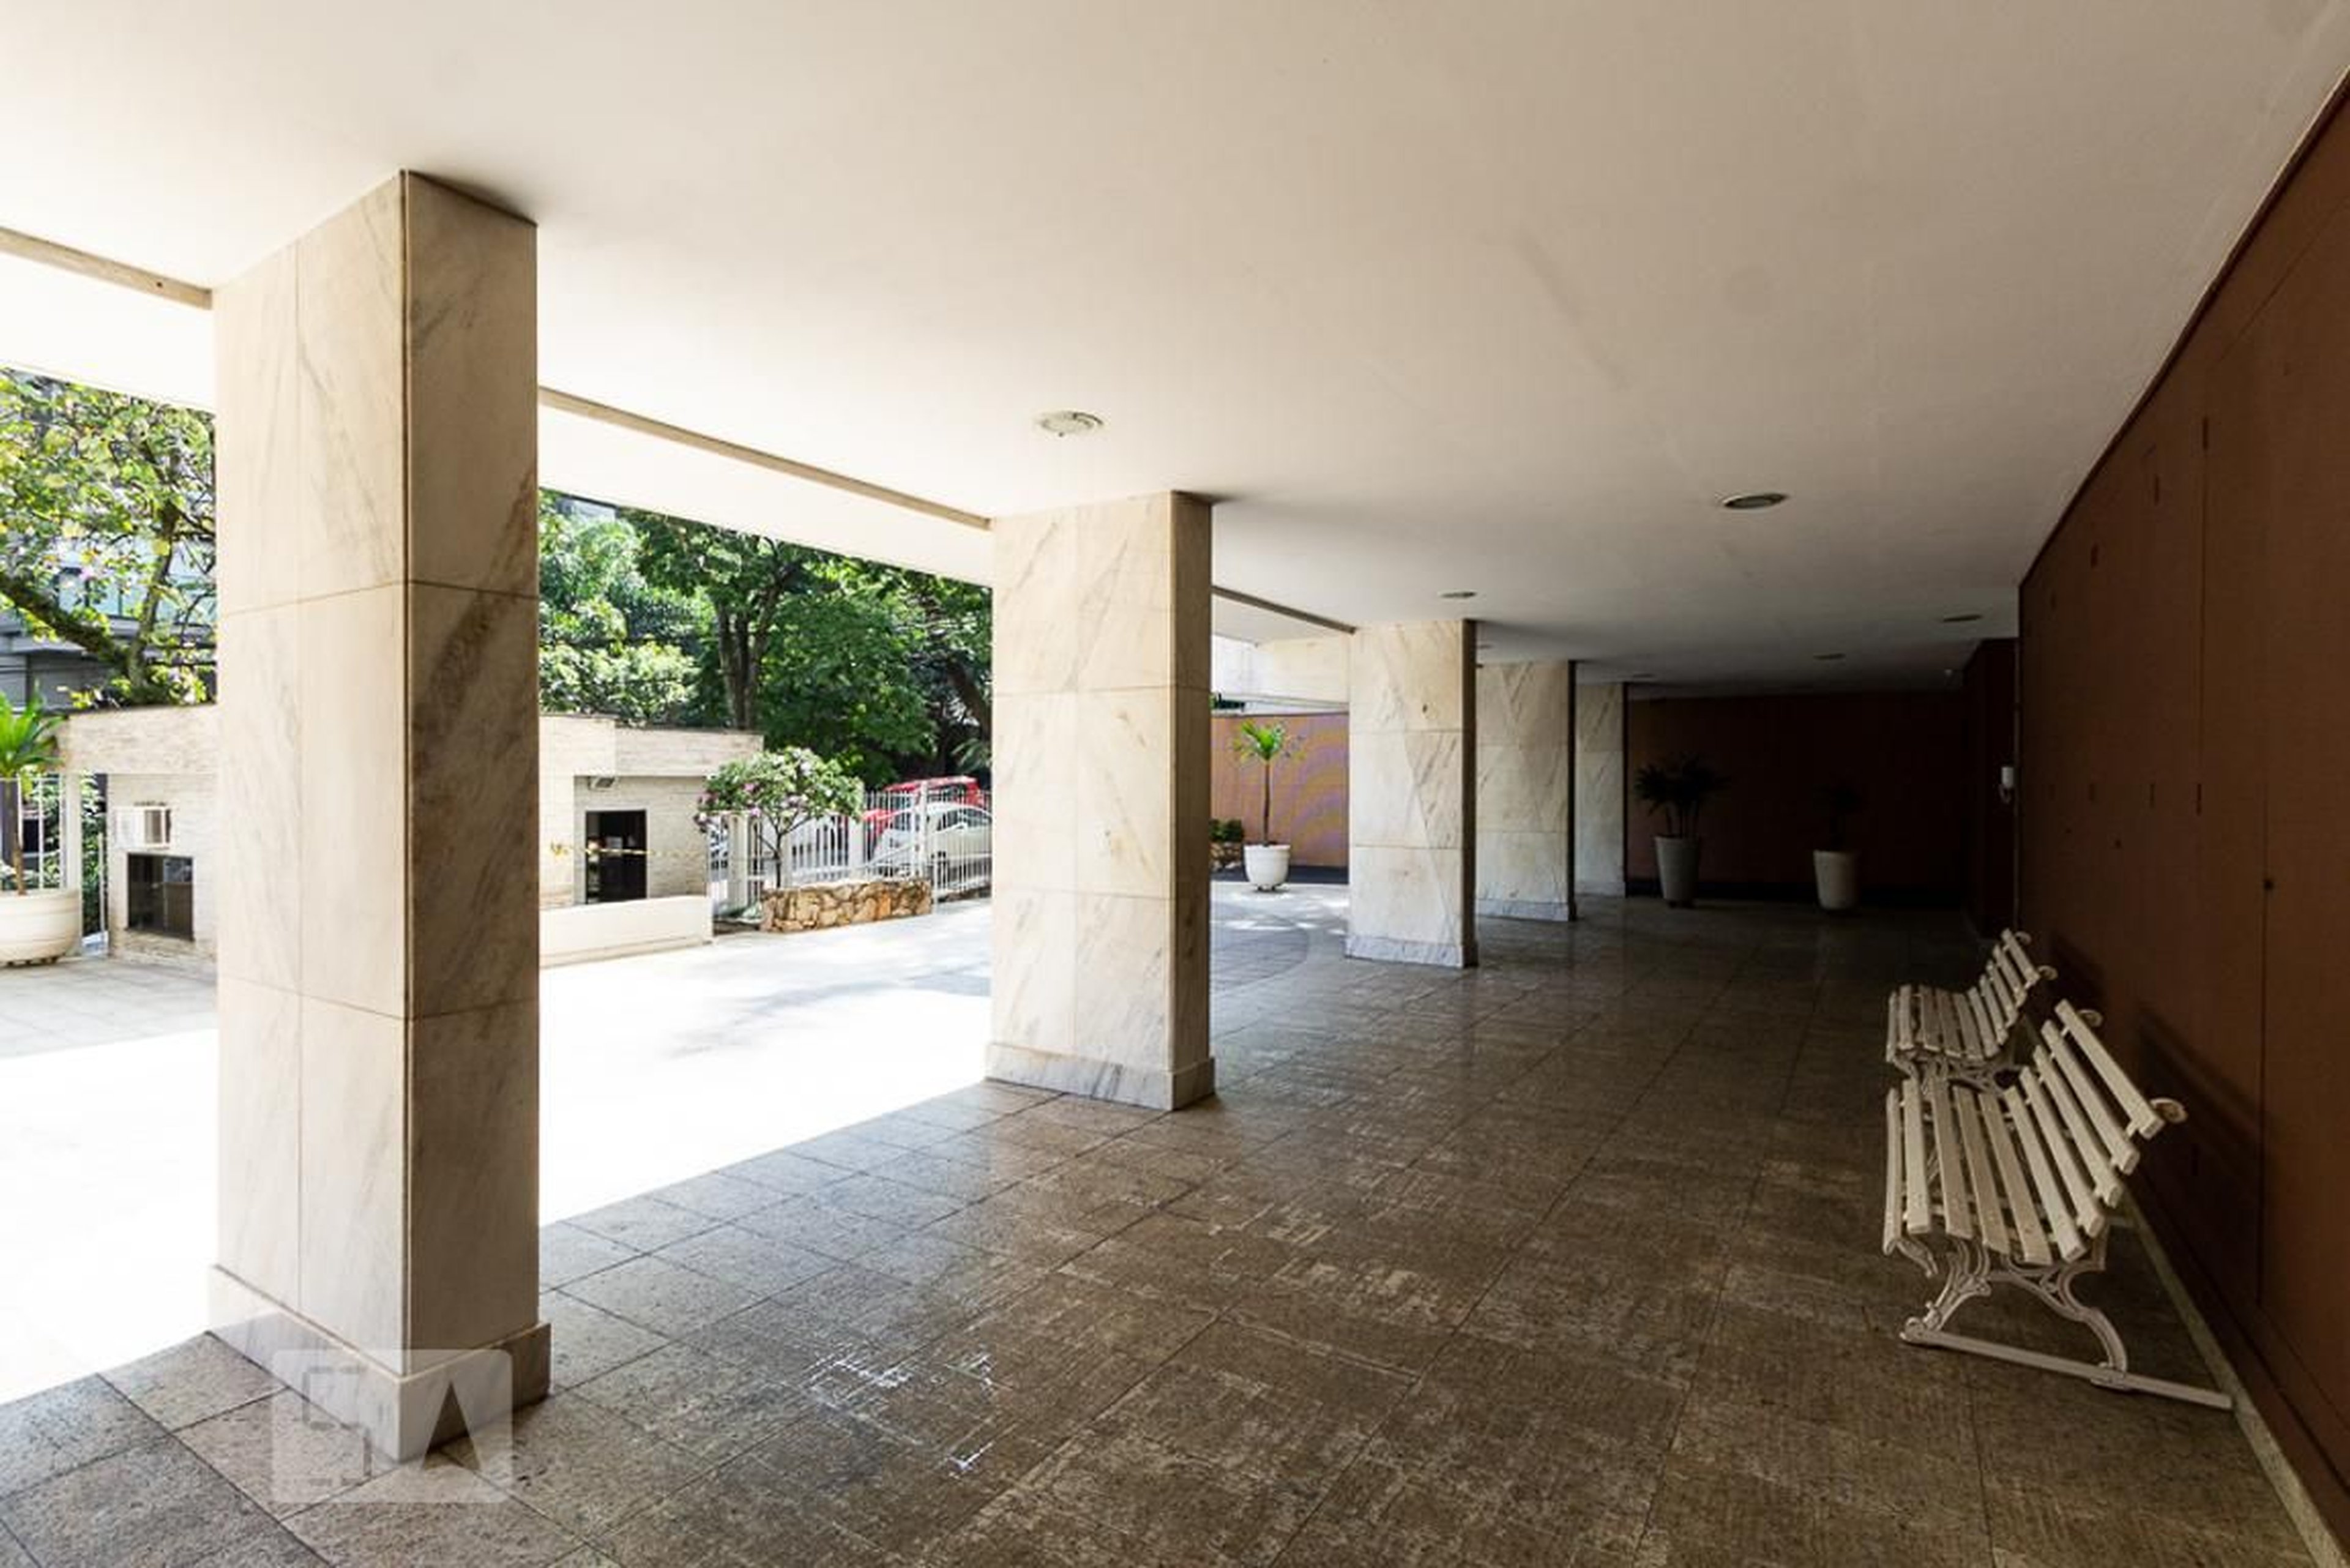 Entrada - Edifício Luiz de Camões Marcello Roberto Moreira